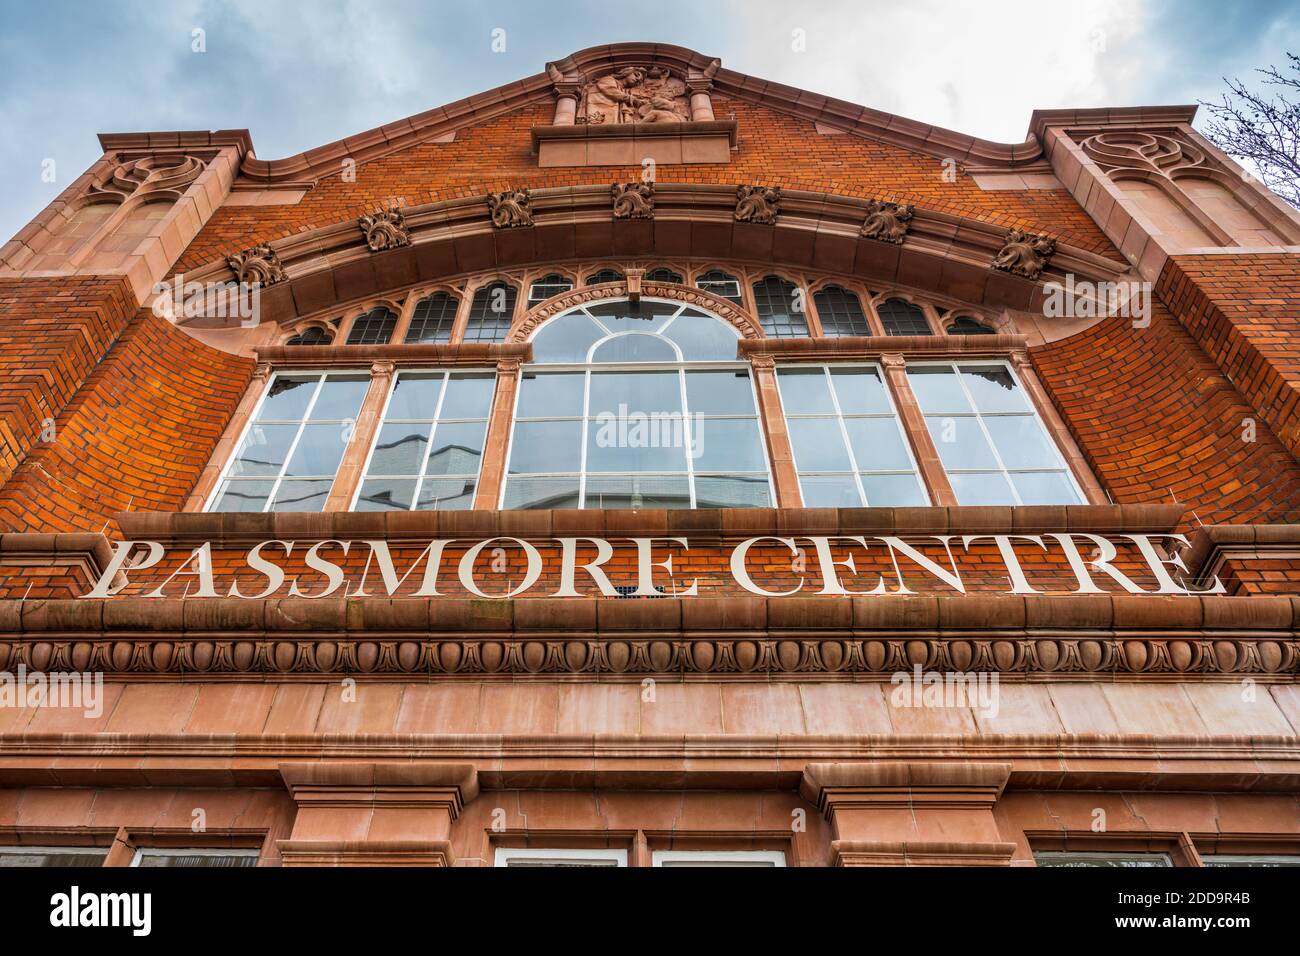 London South Bank University LSBU Passmore Centre - gegründet 2018 zur Unterstützung von Lehrstellen, Fähigkeiten und Ausbildung in der Gemeinde Southwark. Stockfoto